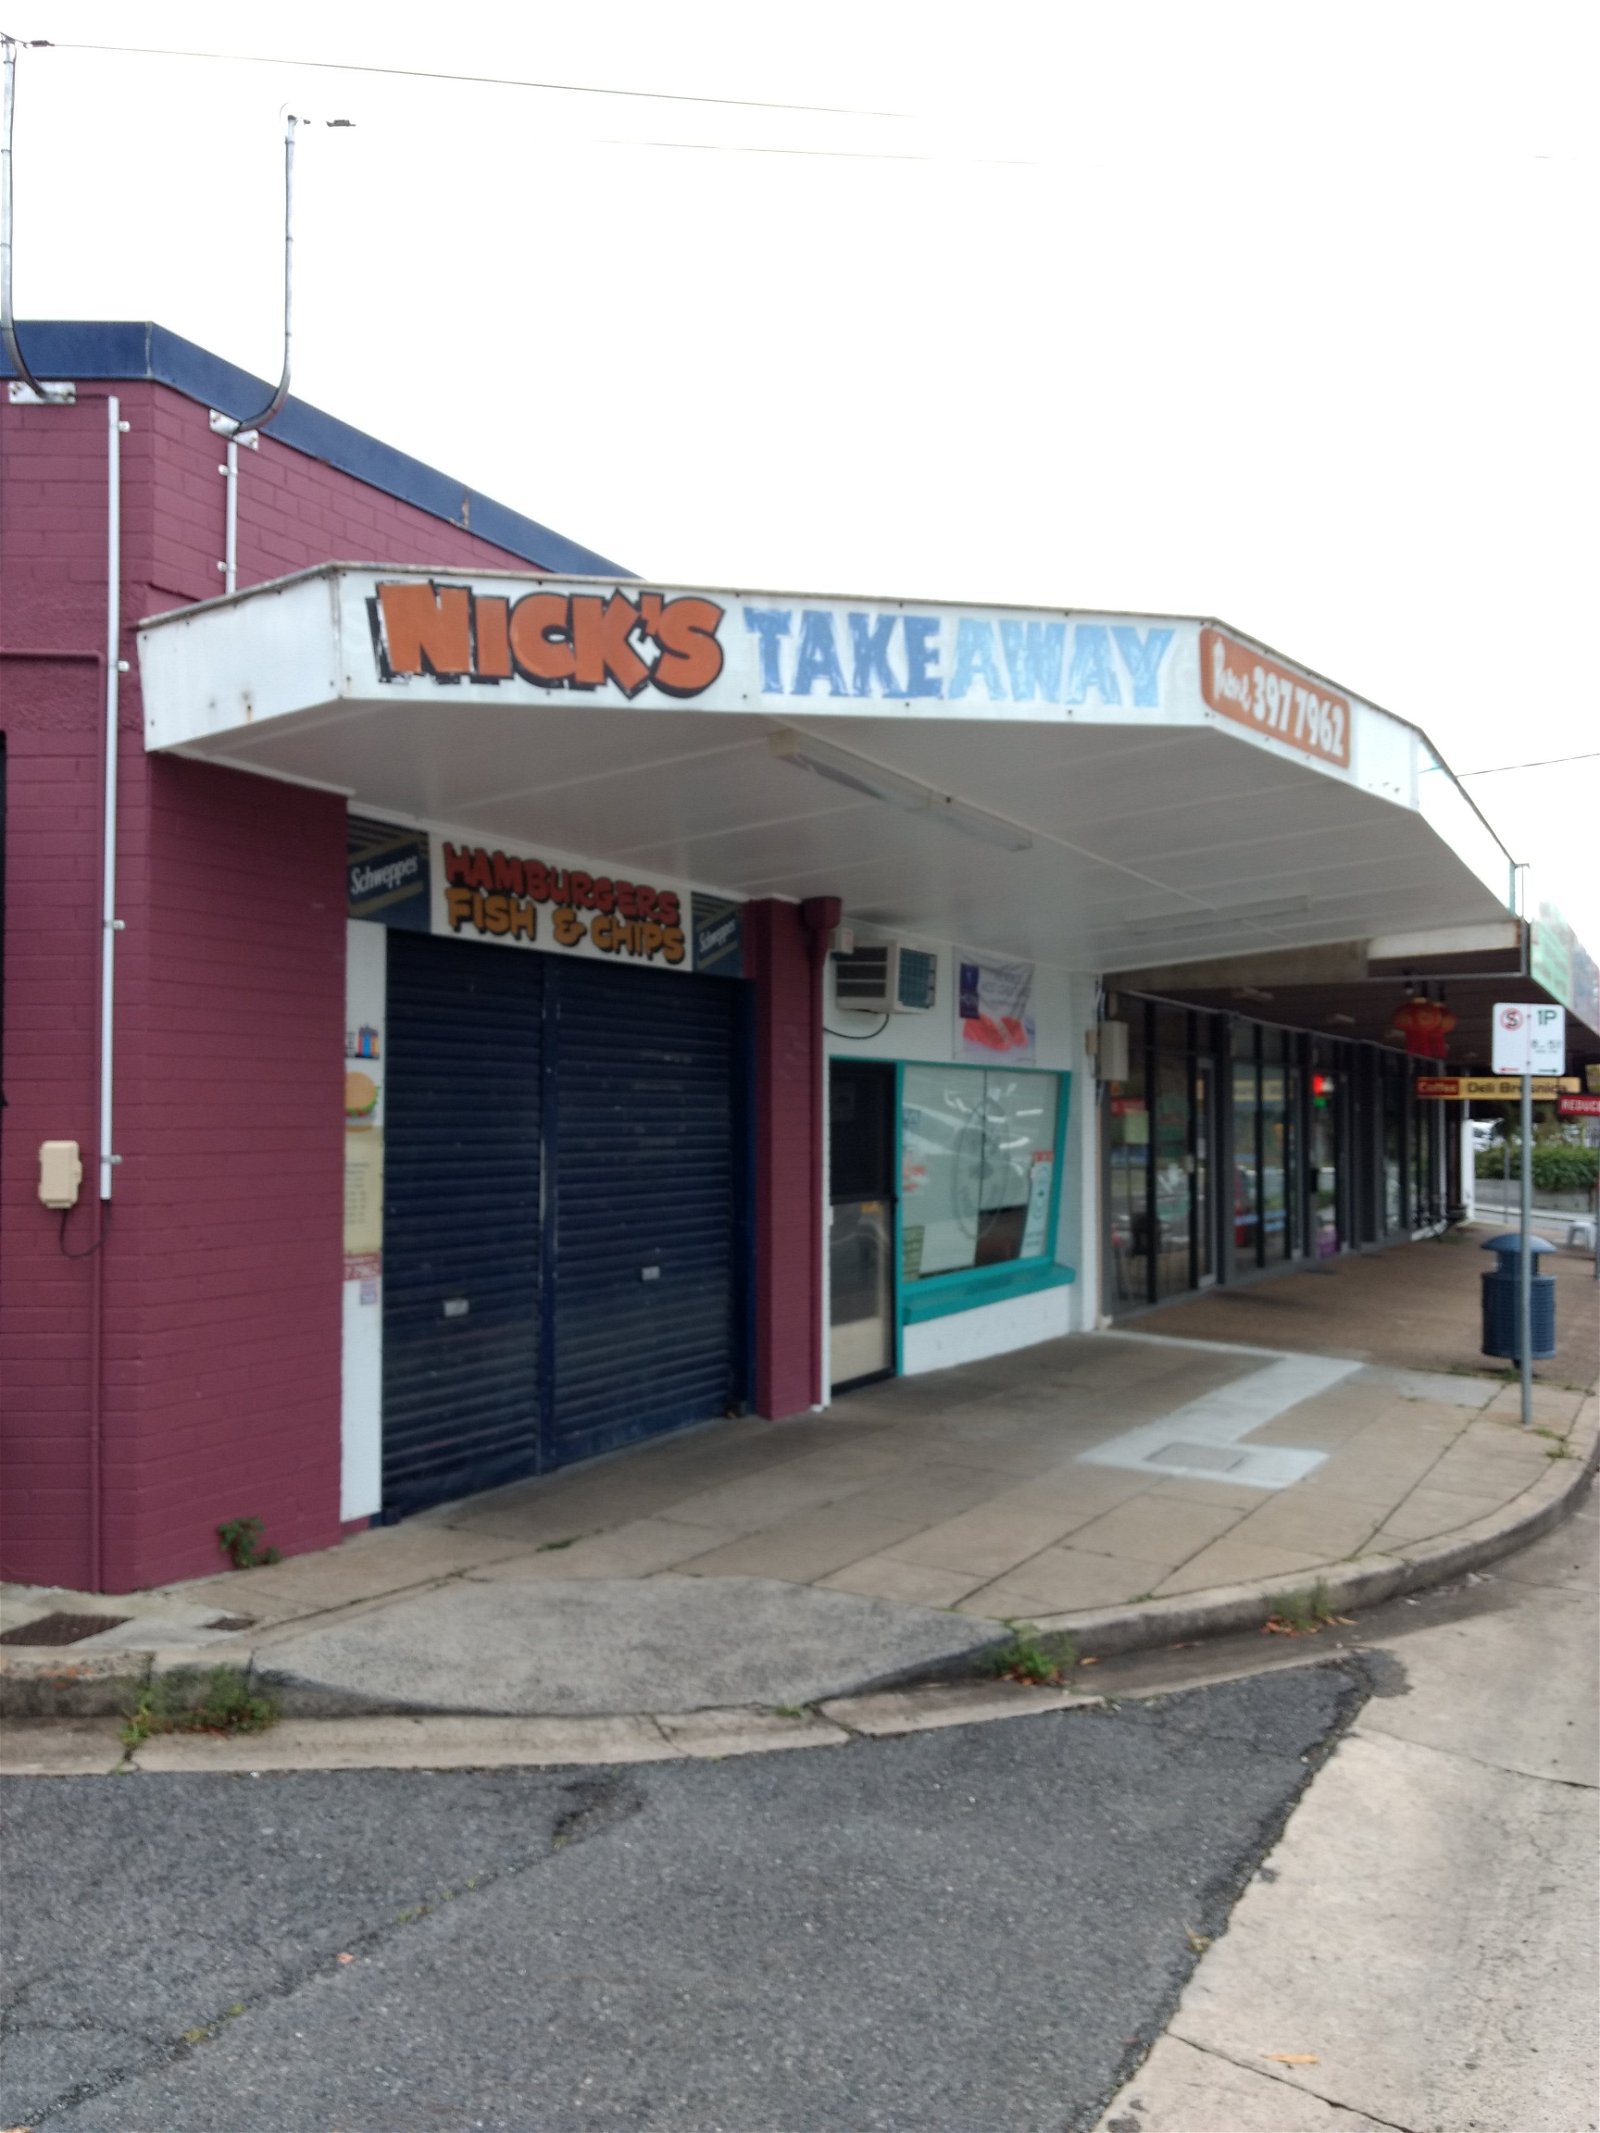 Nick's Takeaway - Pubs Sydney